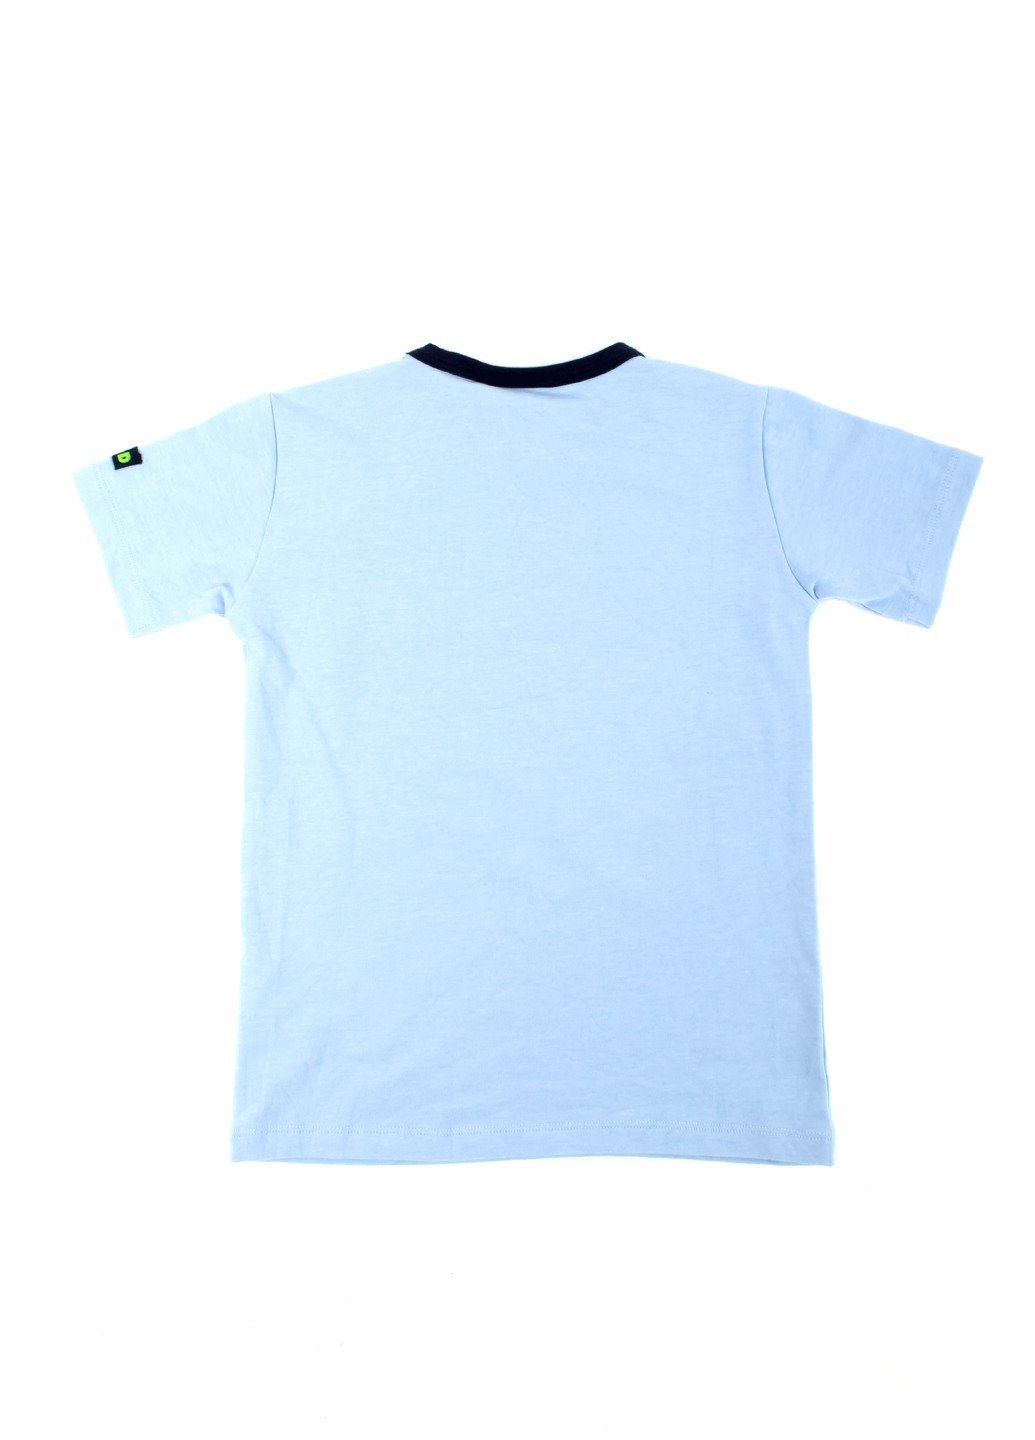 Блакитна літня футболка на хлопчика tom-du блакитна з принтом 070821-001888 TOM DU